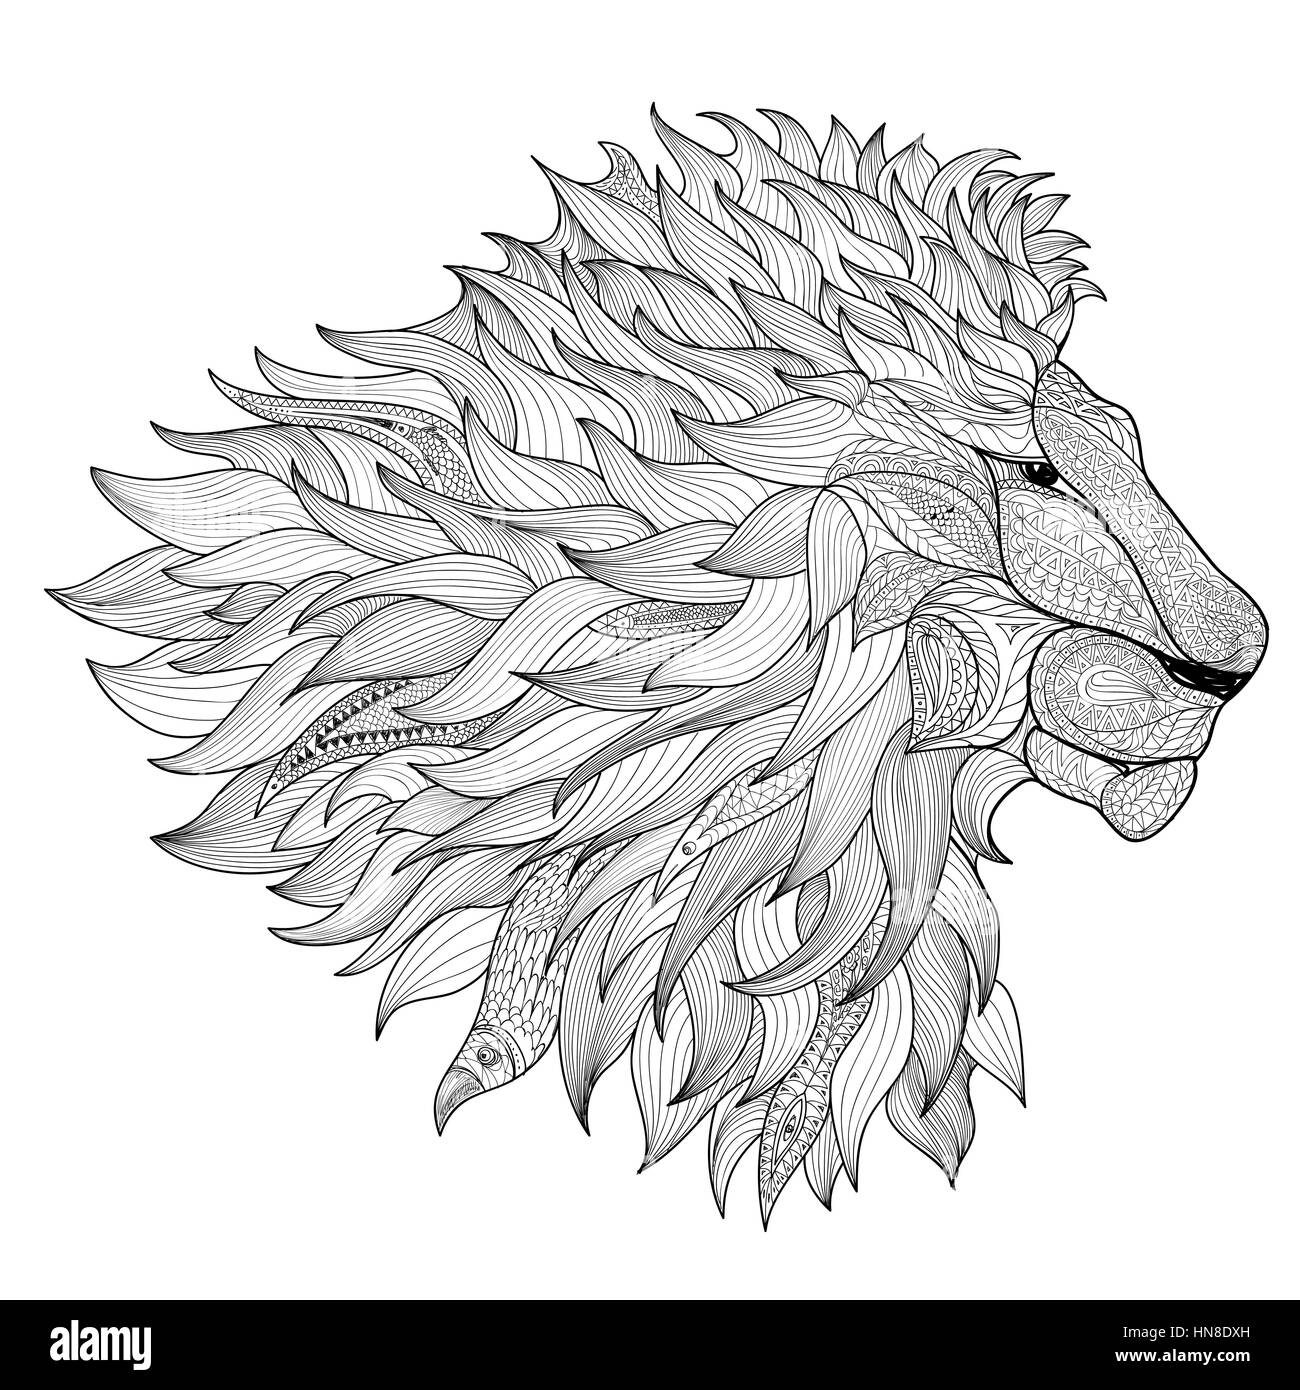 Lion Isolato Zentangle Animali Disegnati A Mano Illustrazione Immagine E Vettoriale Alamy